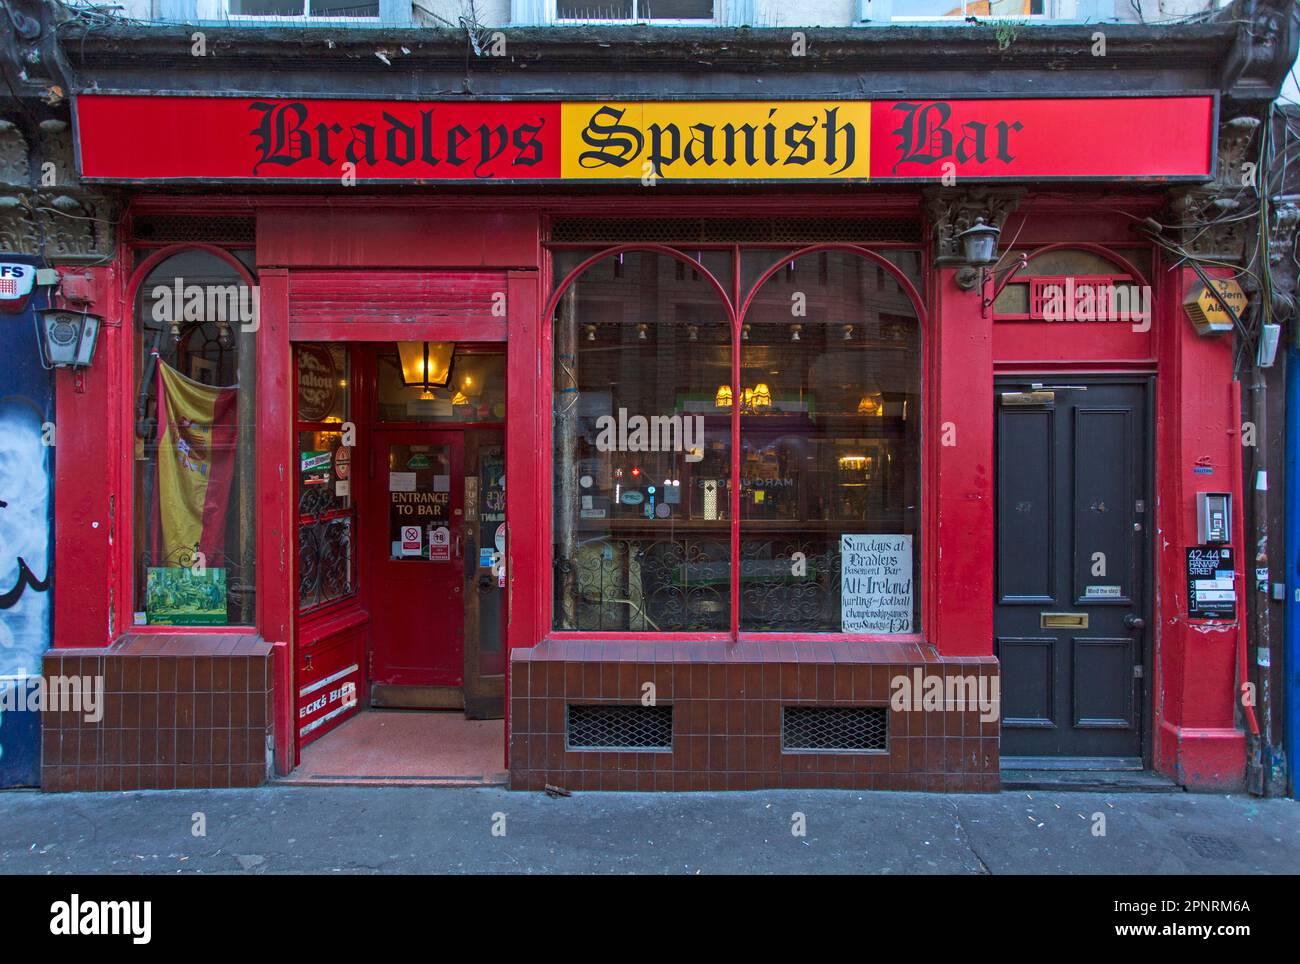 Bradley's Spanish Bar extérieur sur Hanway Street dans le quartier Fitzrovia de Londres, Angleterre Banque D'Images